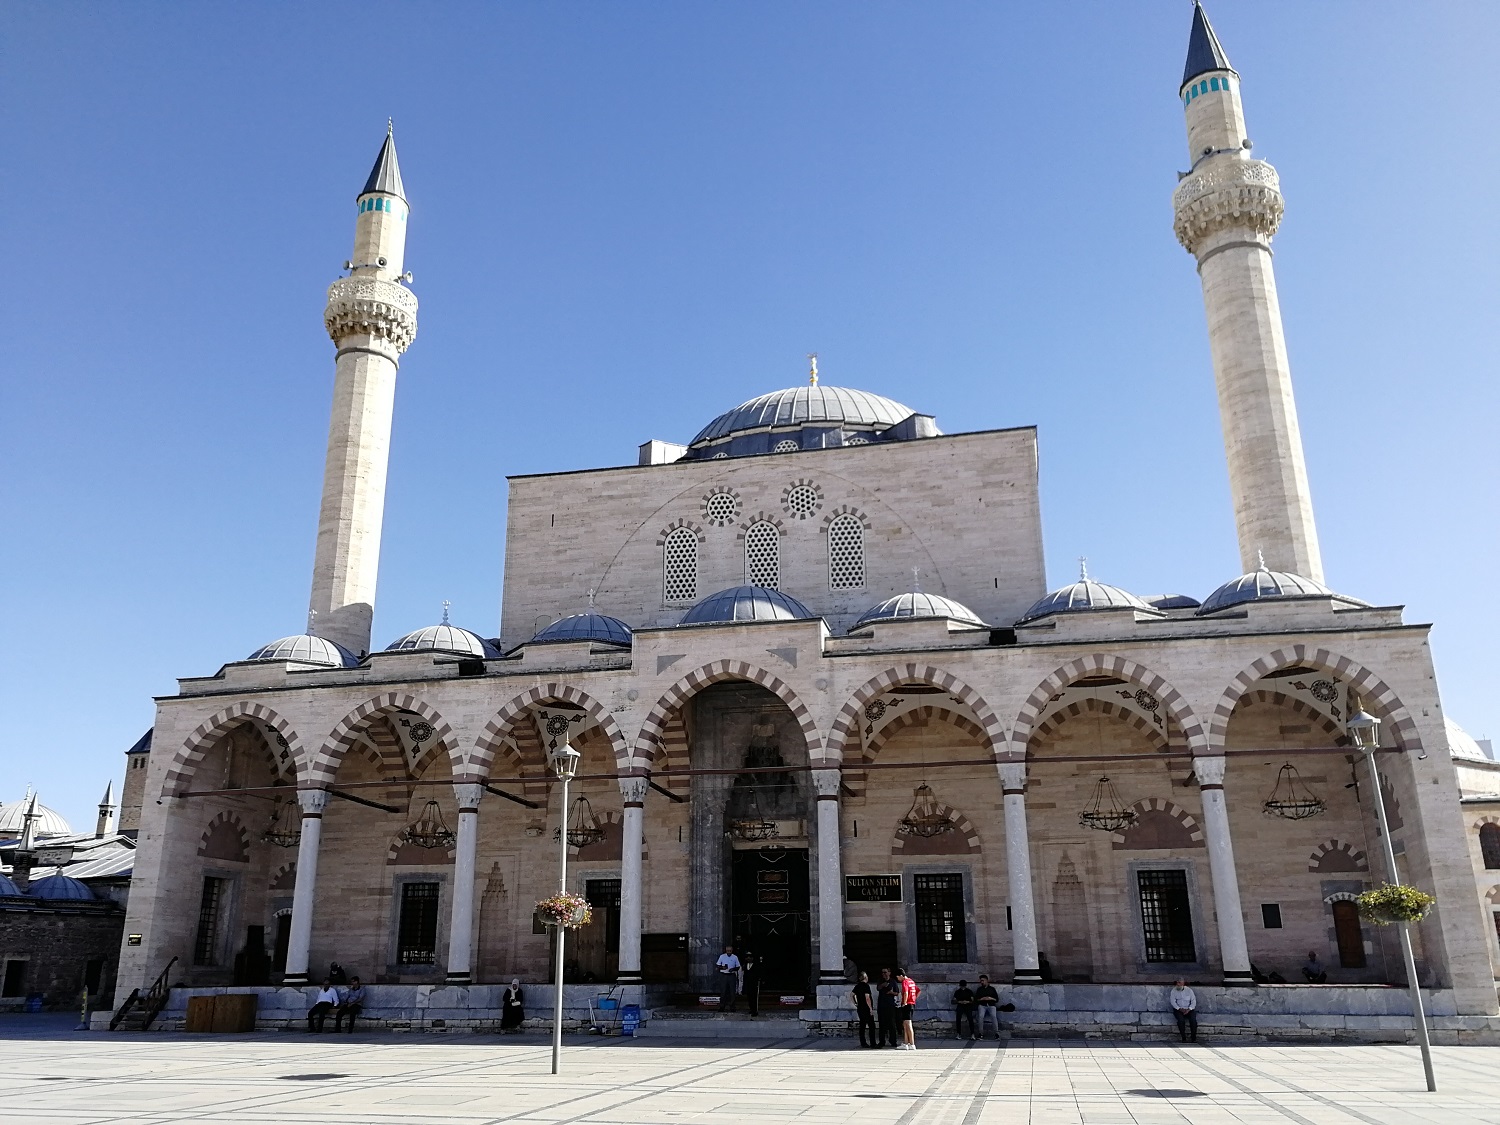 Mezi klenoty Turecka se řadí dobře dochovaná Osmanská mešita Selimiye Camisi ze 16. století. Kredit: Osel